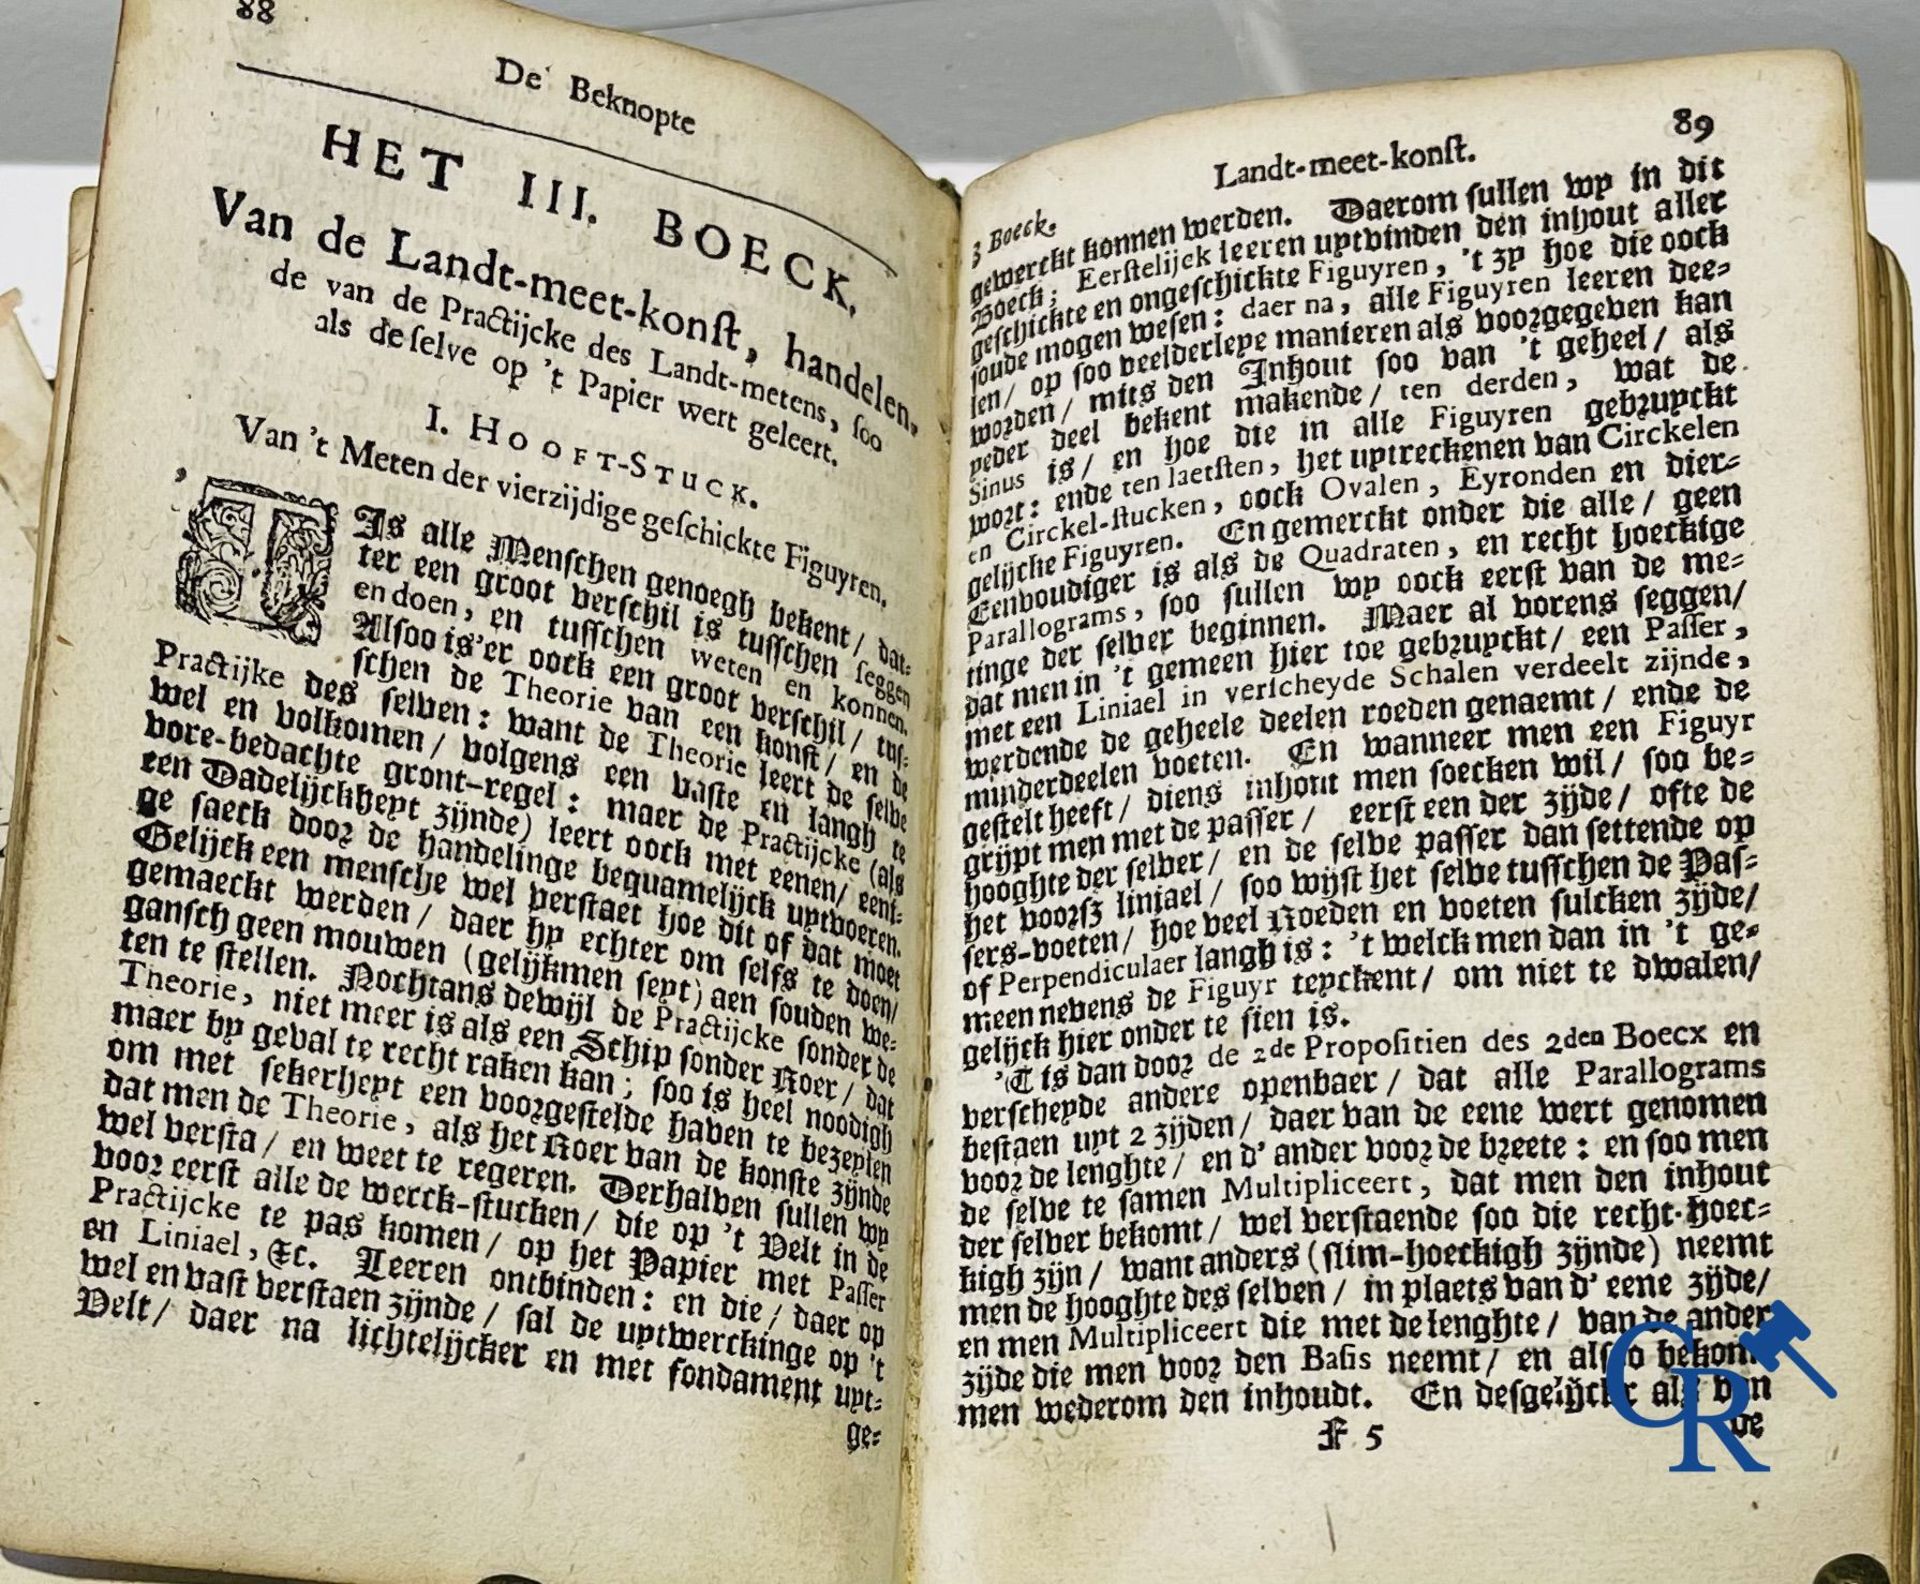 Early printed books: Mattheus Van Nispen. De Beknopte Lant-Meet-Konst. With Mattheus de Vries, in Do - Image 9 of 19